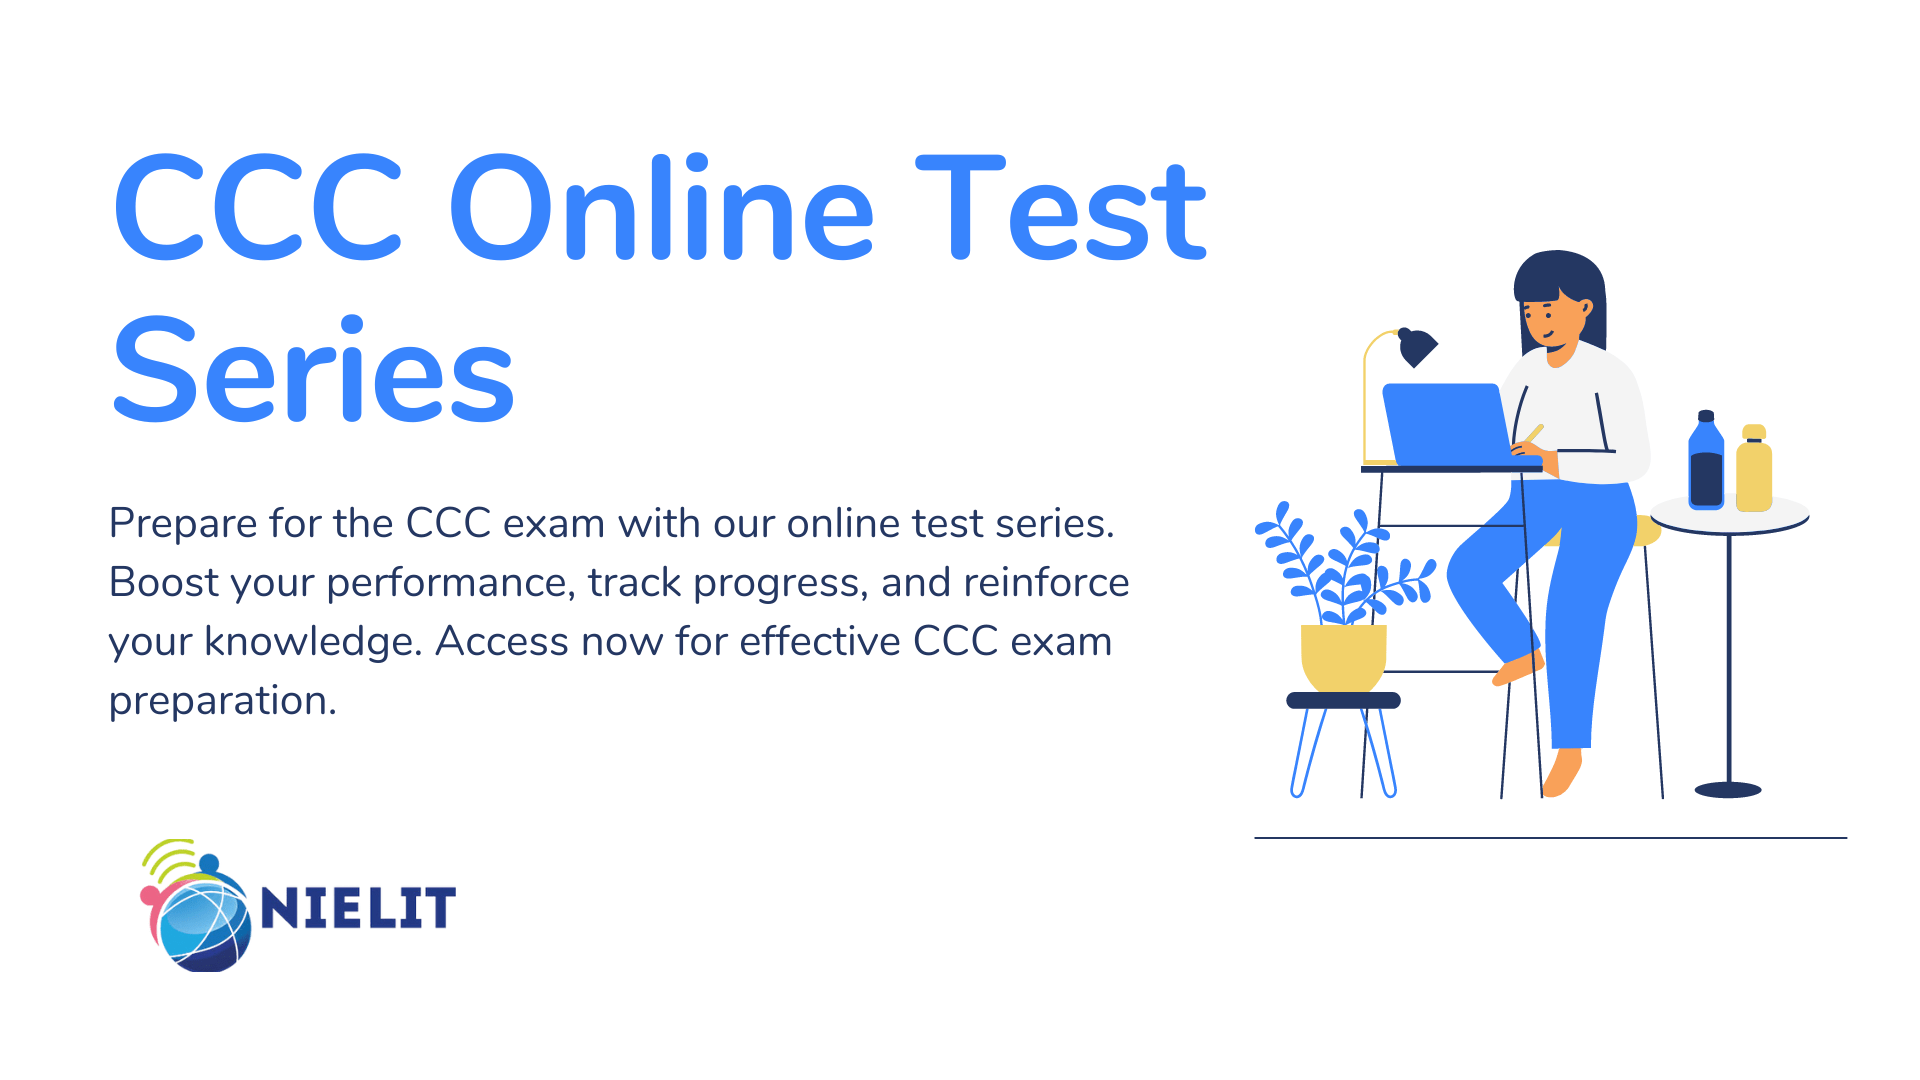 ccc online test